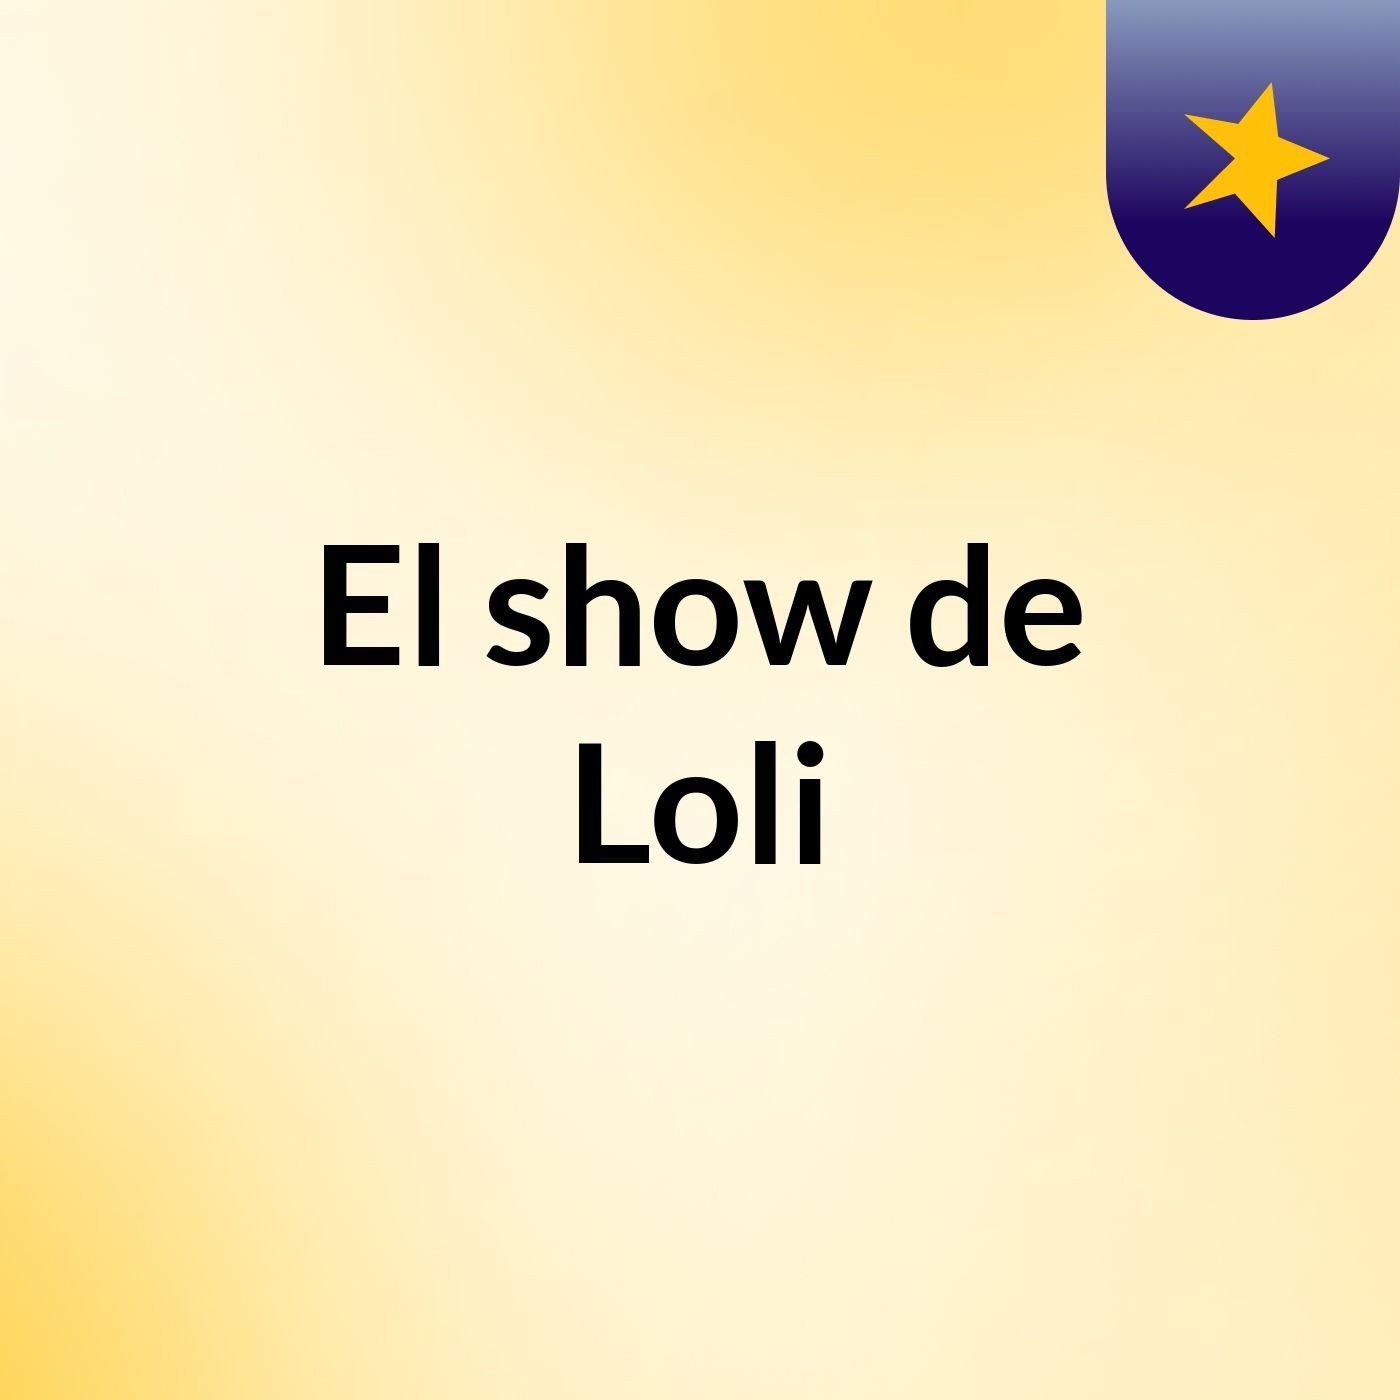 El show de Loli